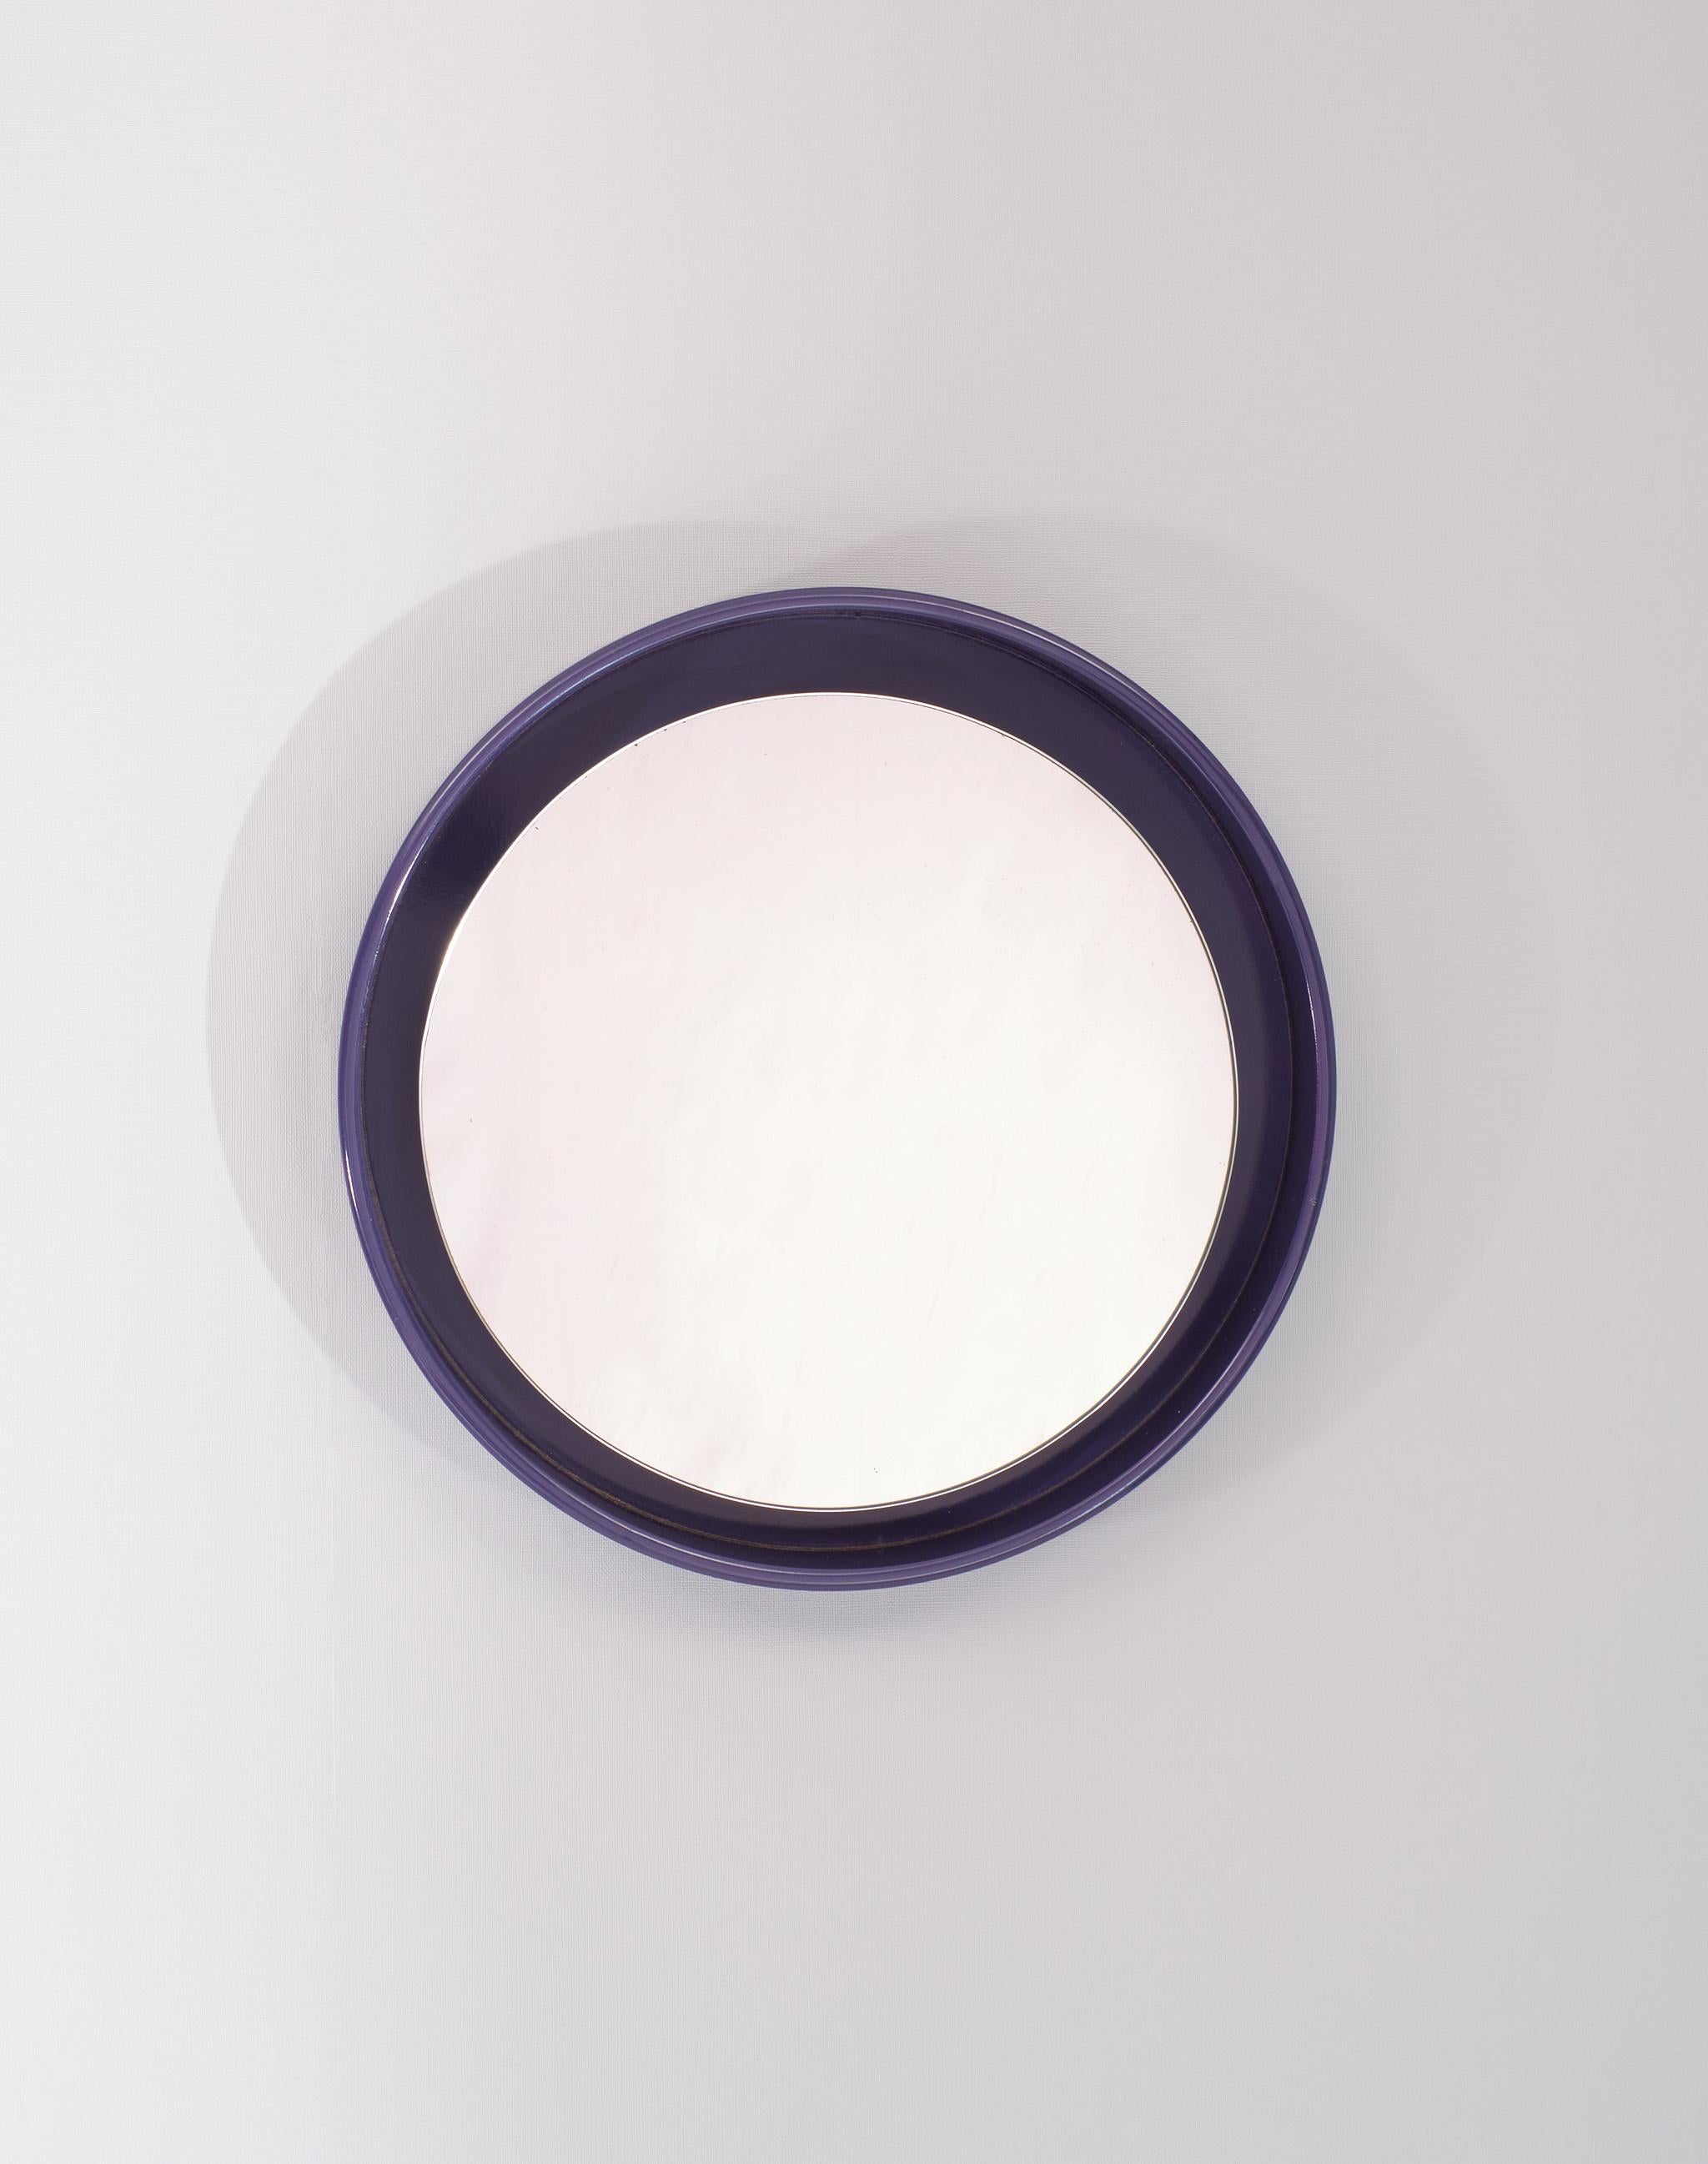 Sehr schöne Runde  Spiegeln .lila Farbe . Der Spiegel selbst ist ein wenig dezentriert
Seine  vorgesehen. Sehr gute Qualität. Unterzeichnet Nebu Holland 